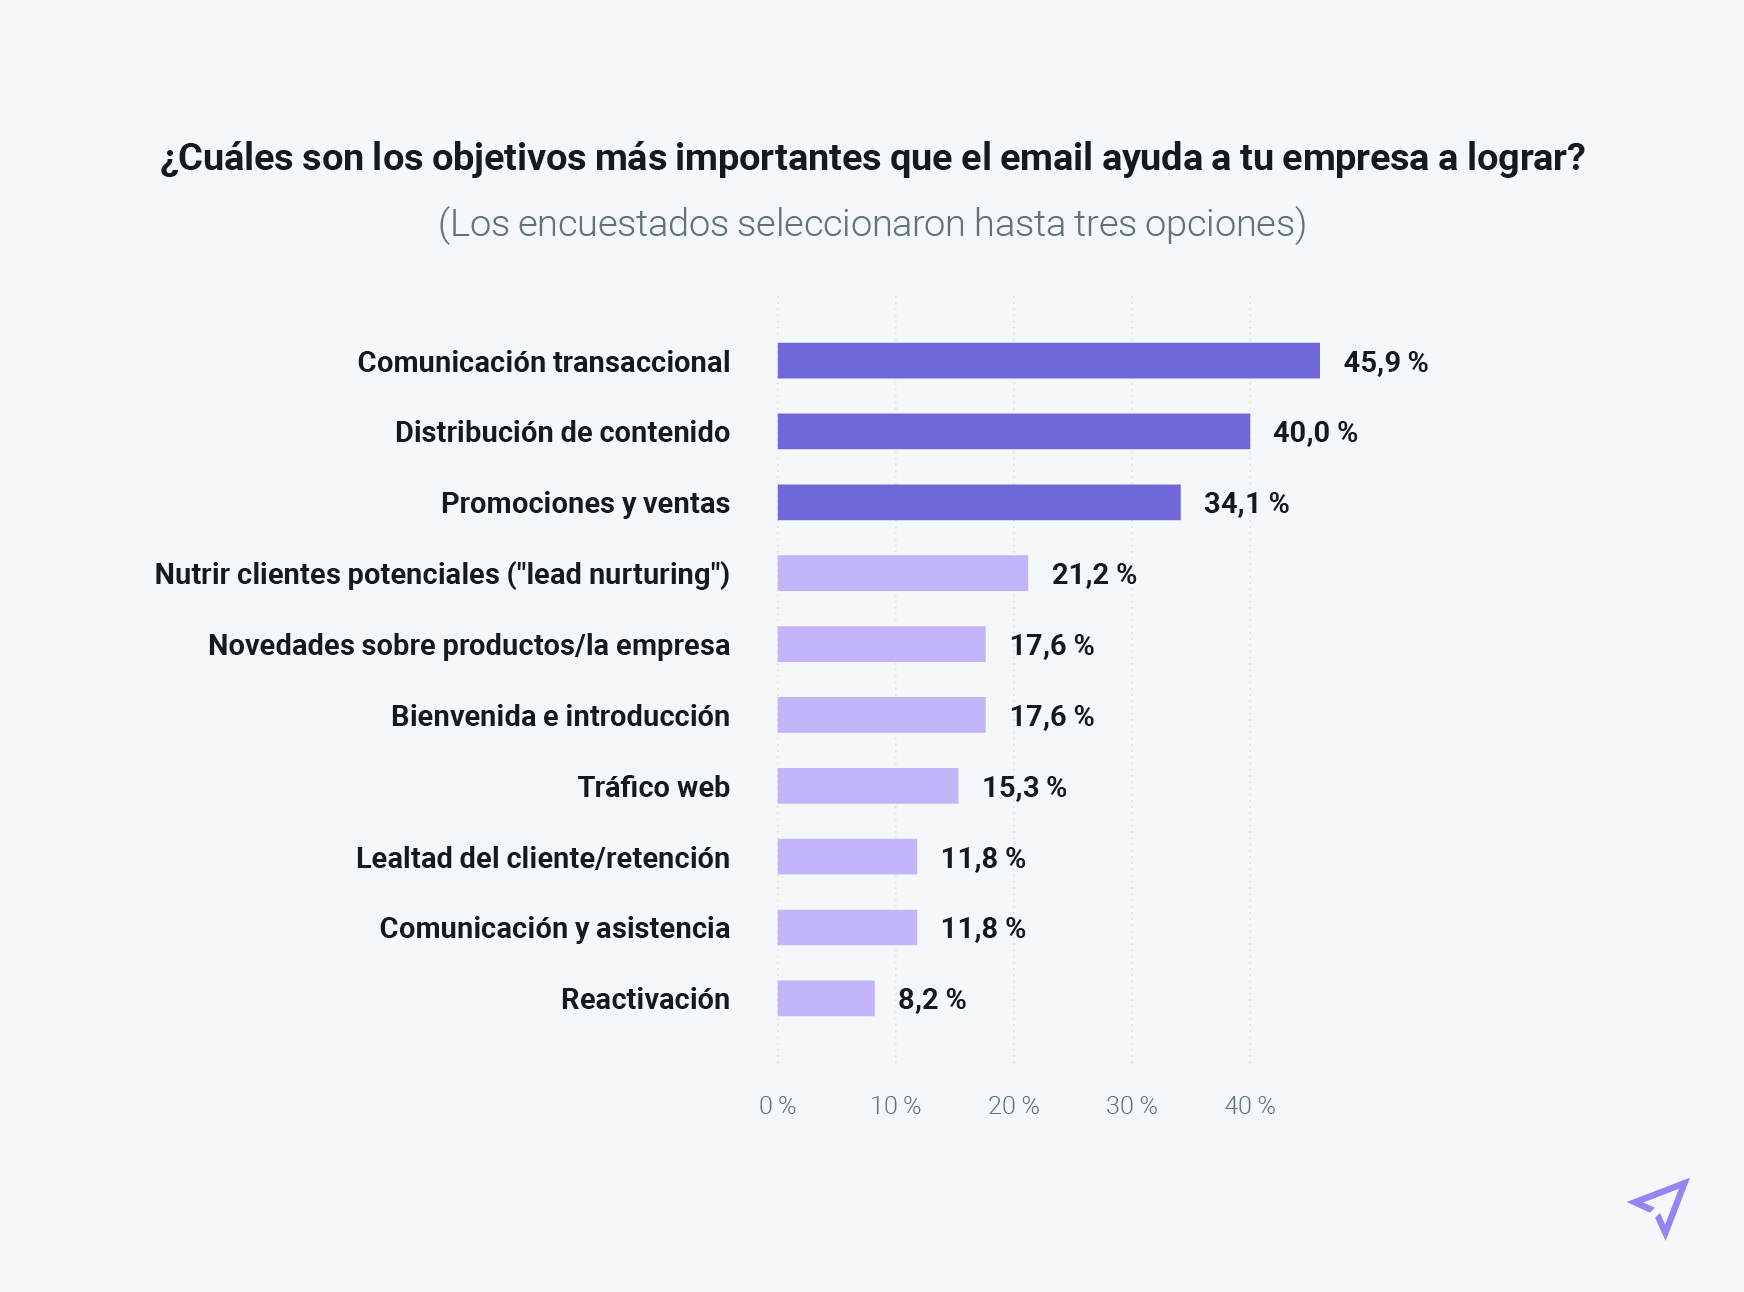 Objetivos principales de las empresas españolas con los que colabora el email.